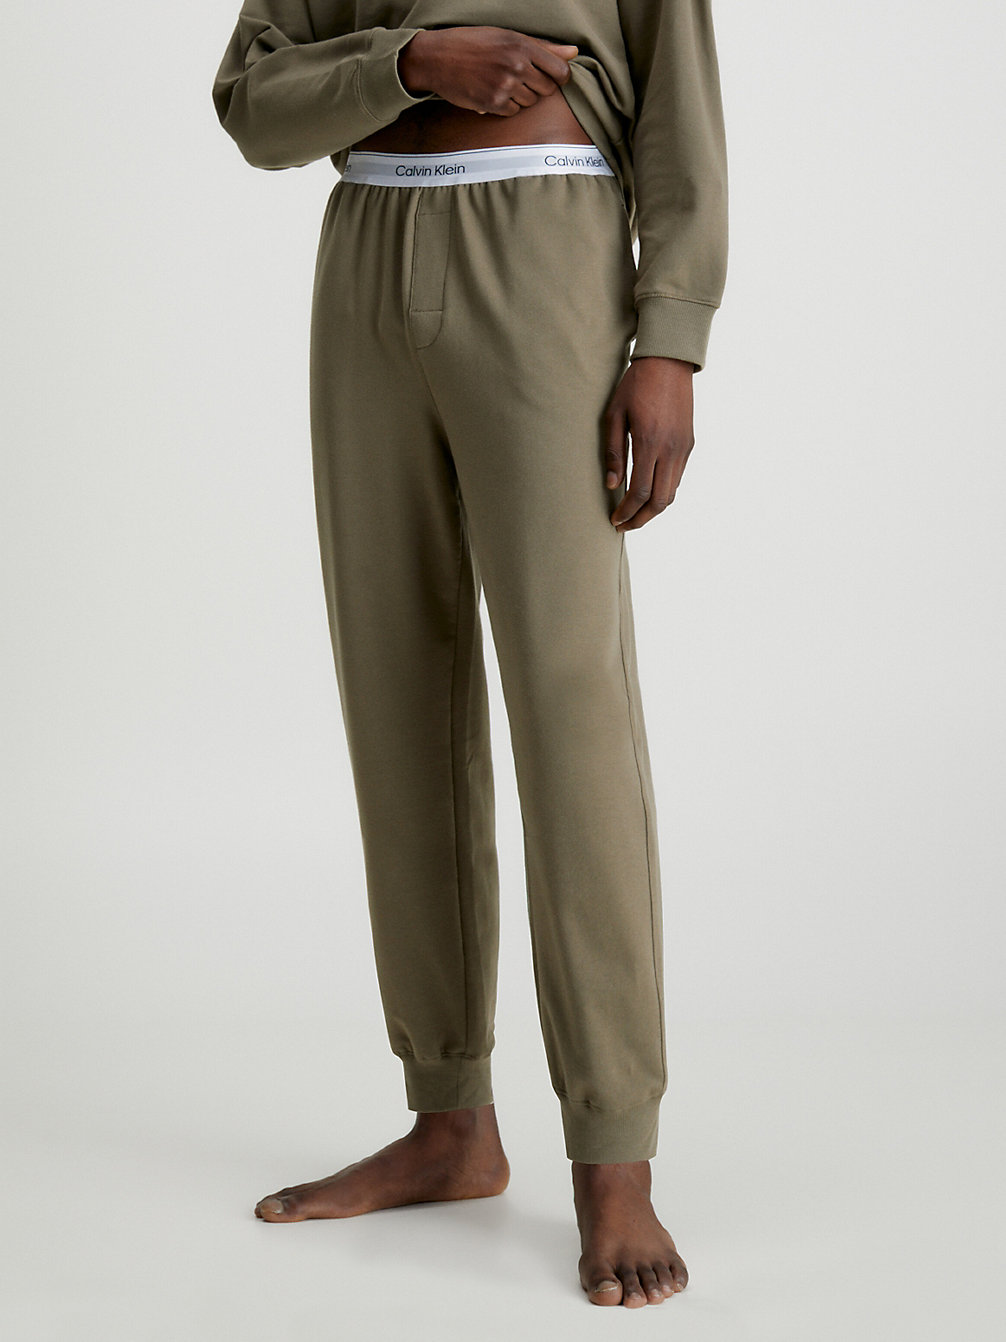 GRAY OLIVE > Spodnie Dresowe Po Domu - Modern Cotton > undefined Mężczyźni - Calvin Klein